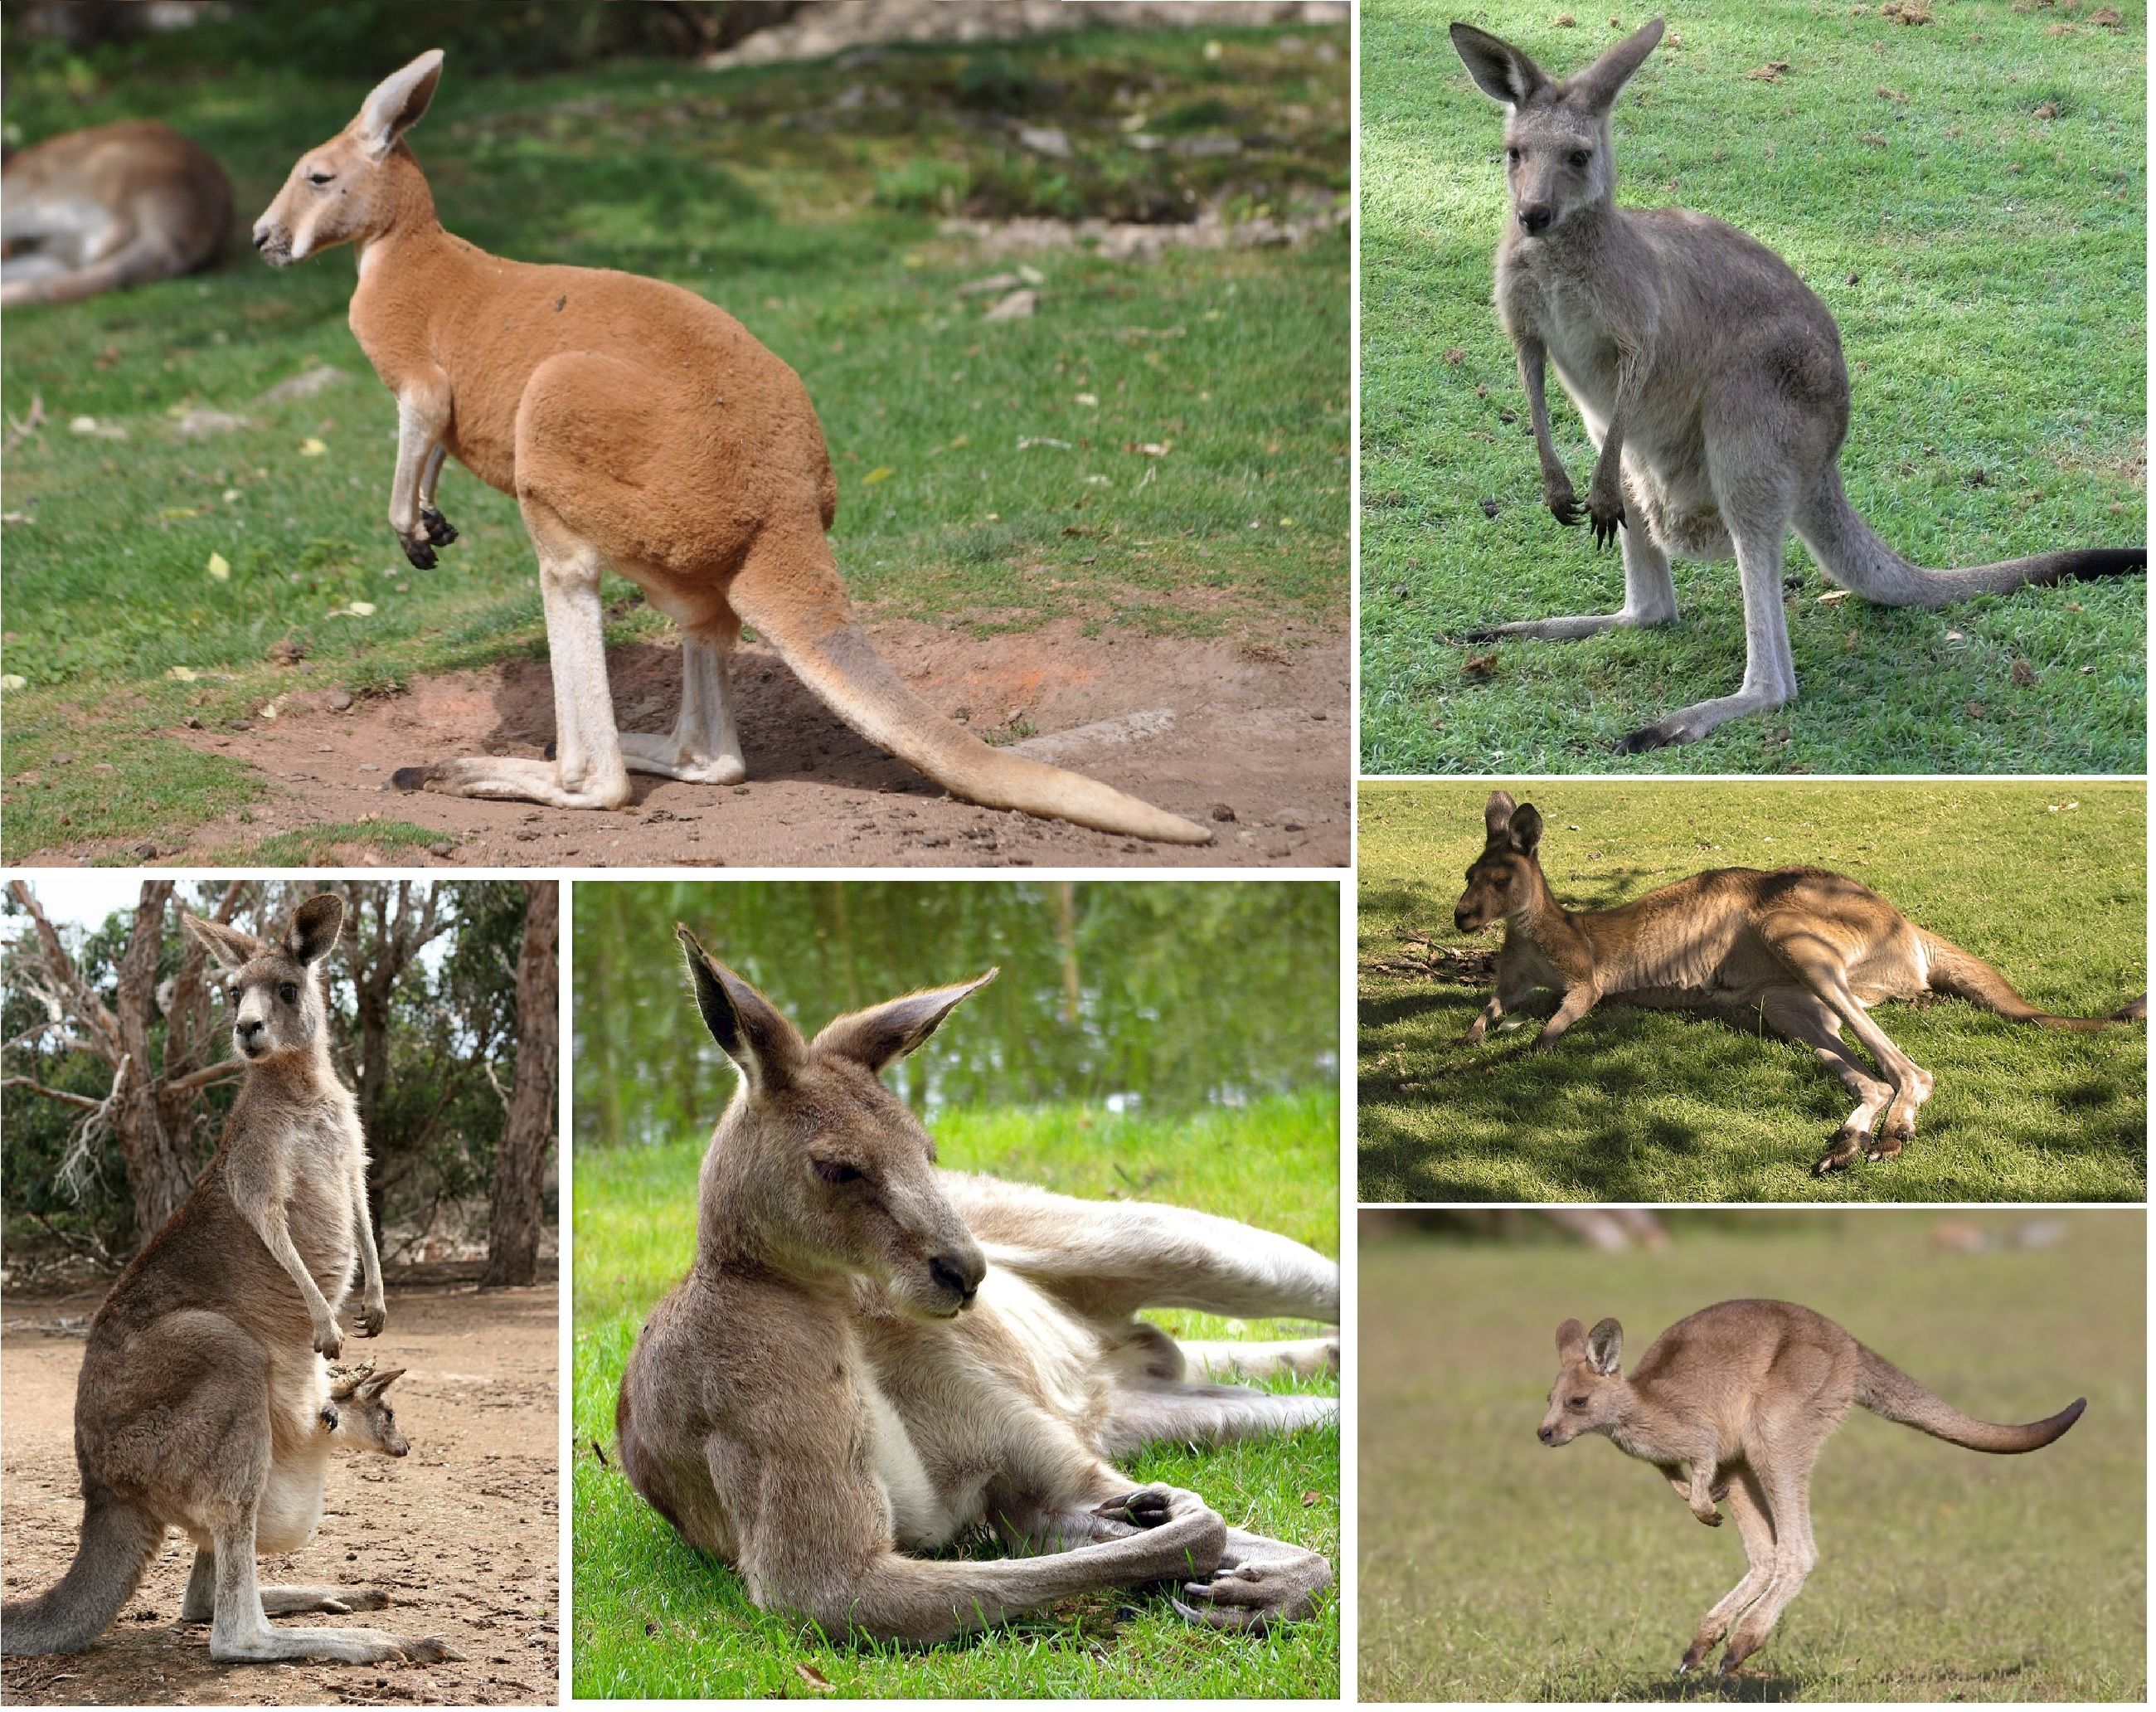 kenguru | kenguru-land | Pinterest